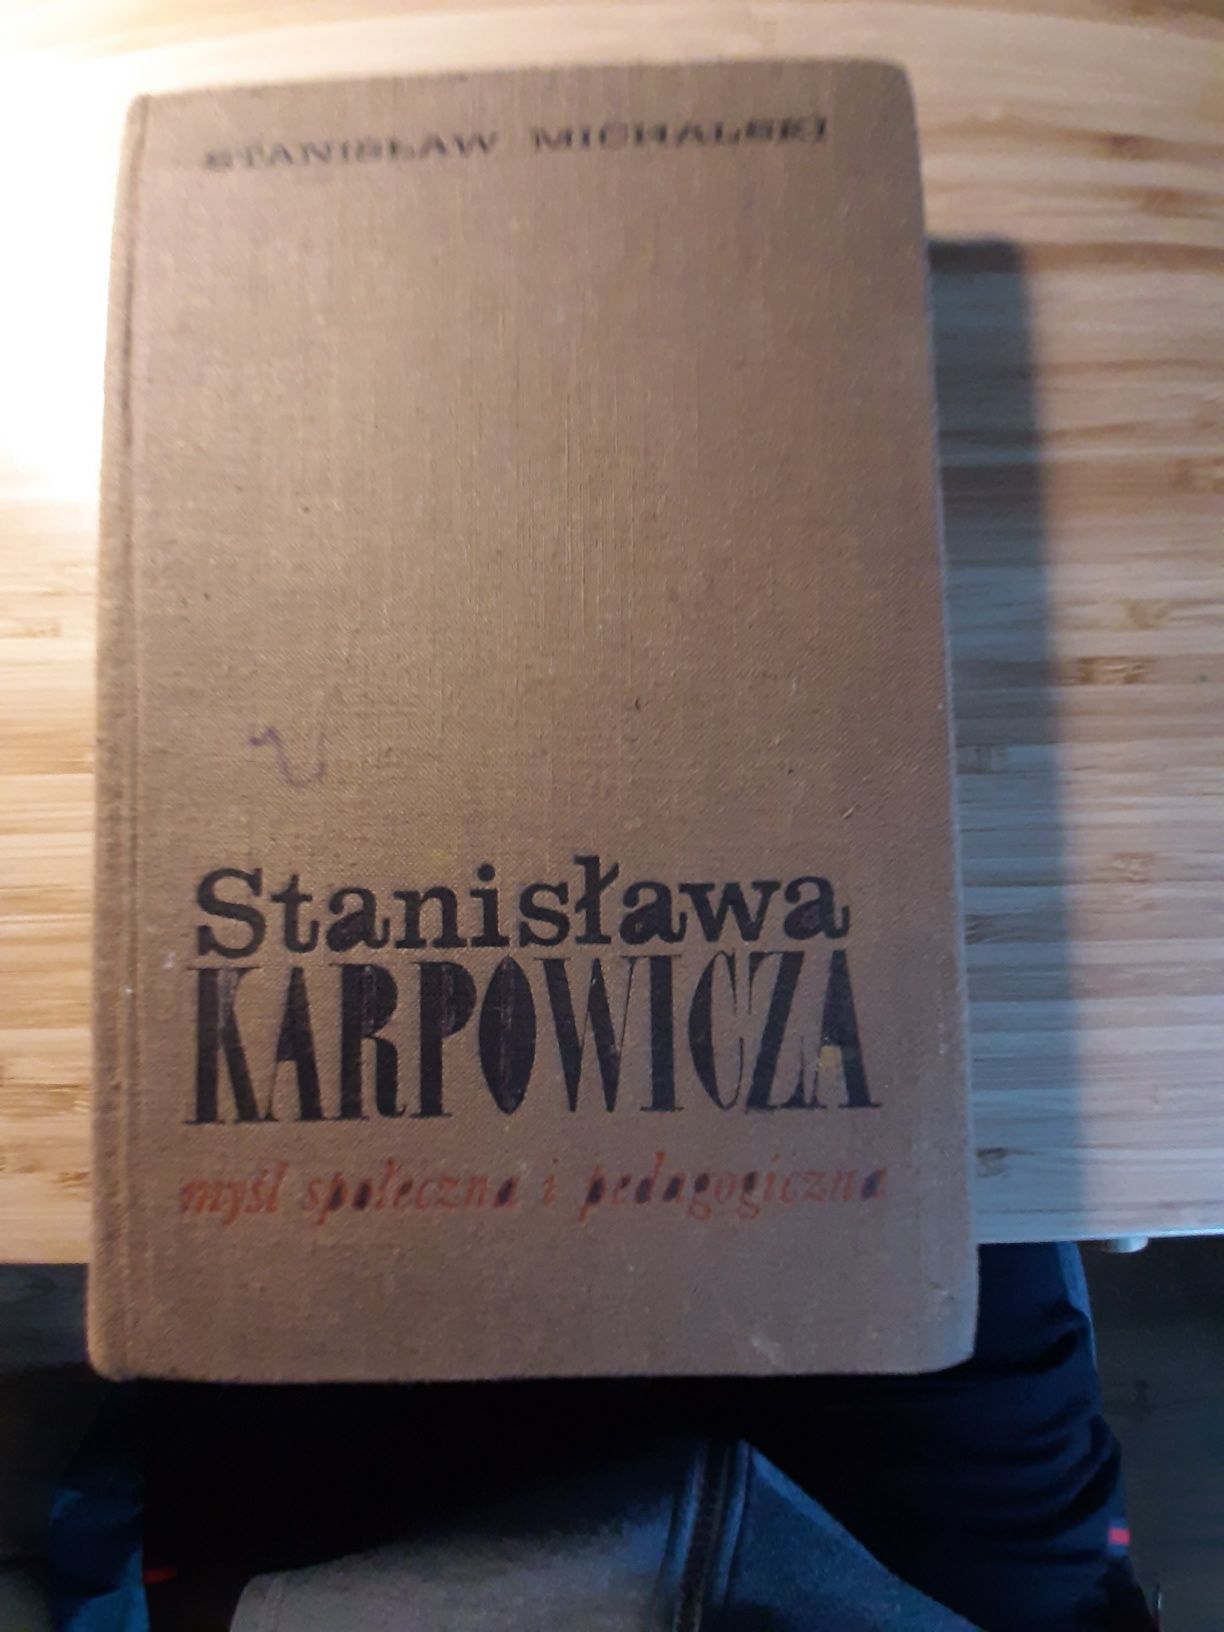 " Stanisława Karpowicza myśl spoleczna i pedagogiczna "